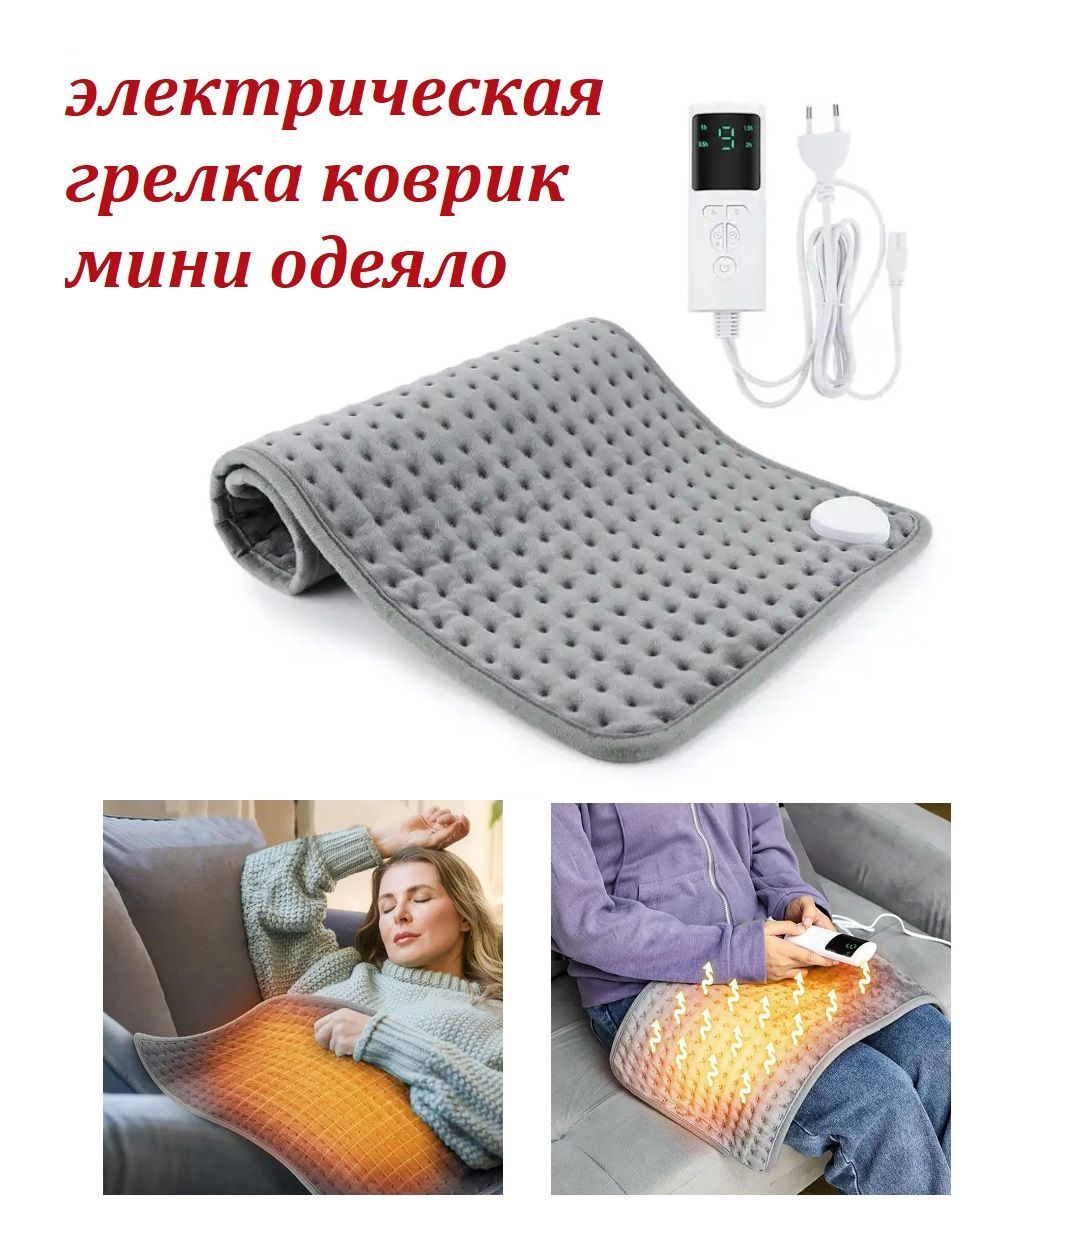 Электрическая грелка коврик TOP-Store Warmer Mat